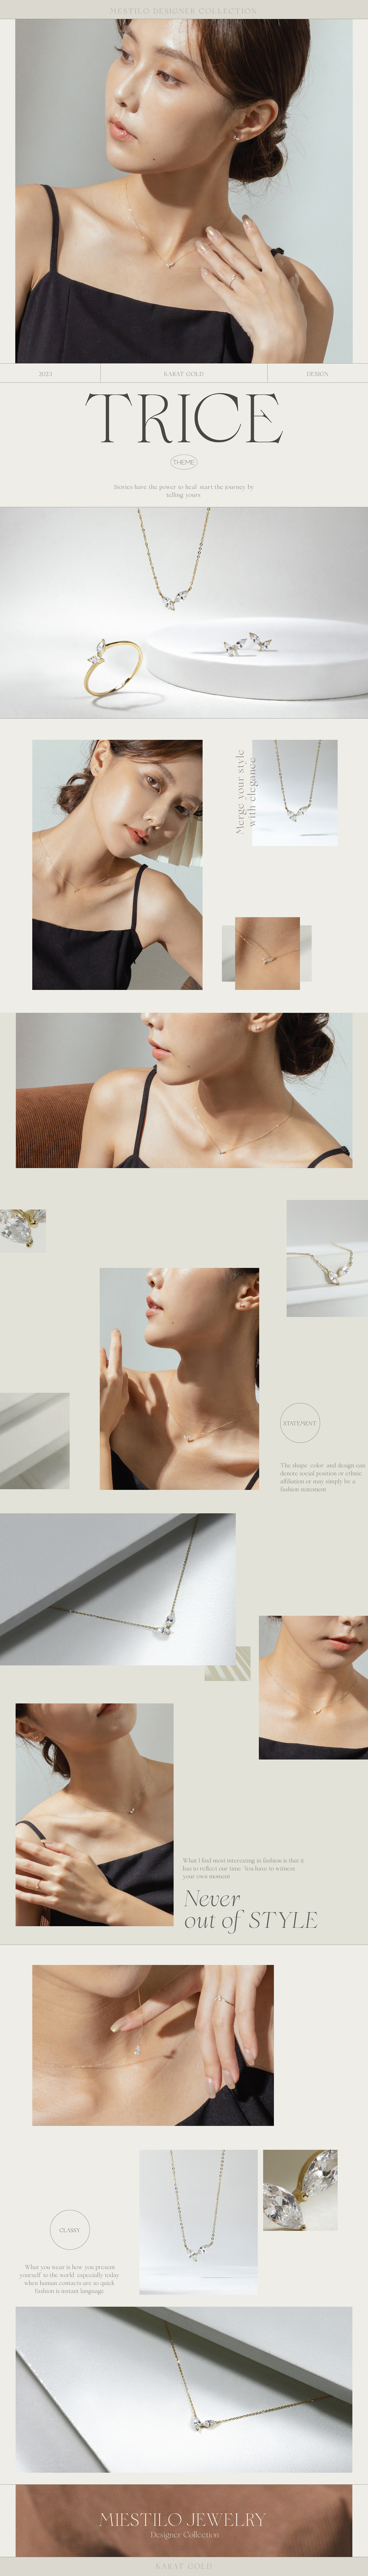 14K 依偎項鍊｜Miestilo Jewelry設計師輕珠寶品牌｜舒飾質感每一刻